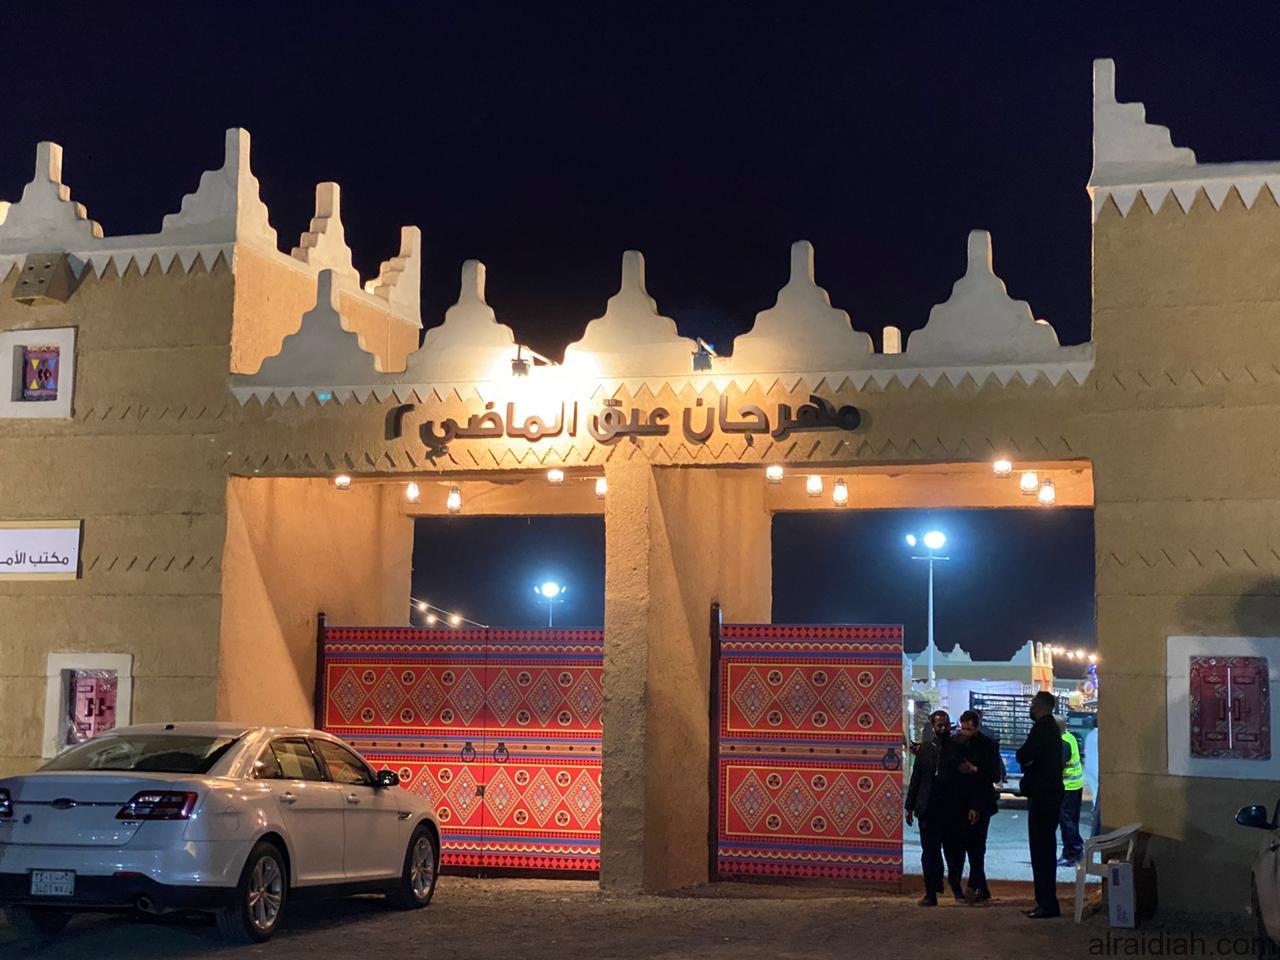 أنطلاق مهرجان “عبق الماضي” بنسختة الثانية في الرياض